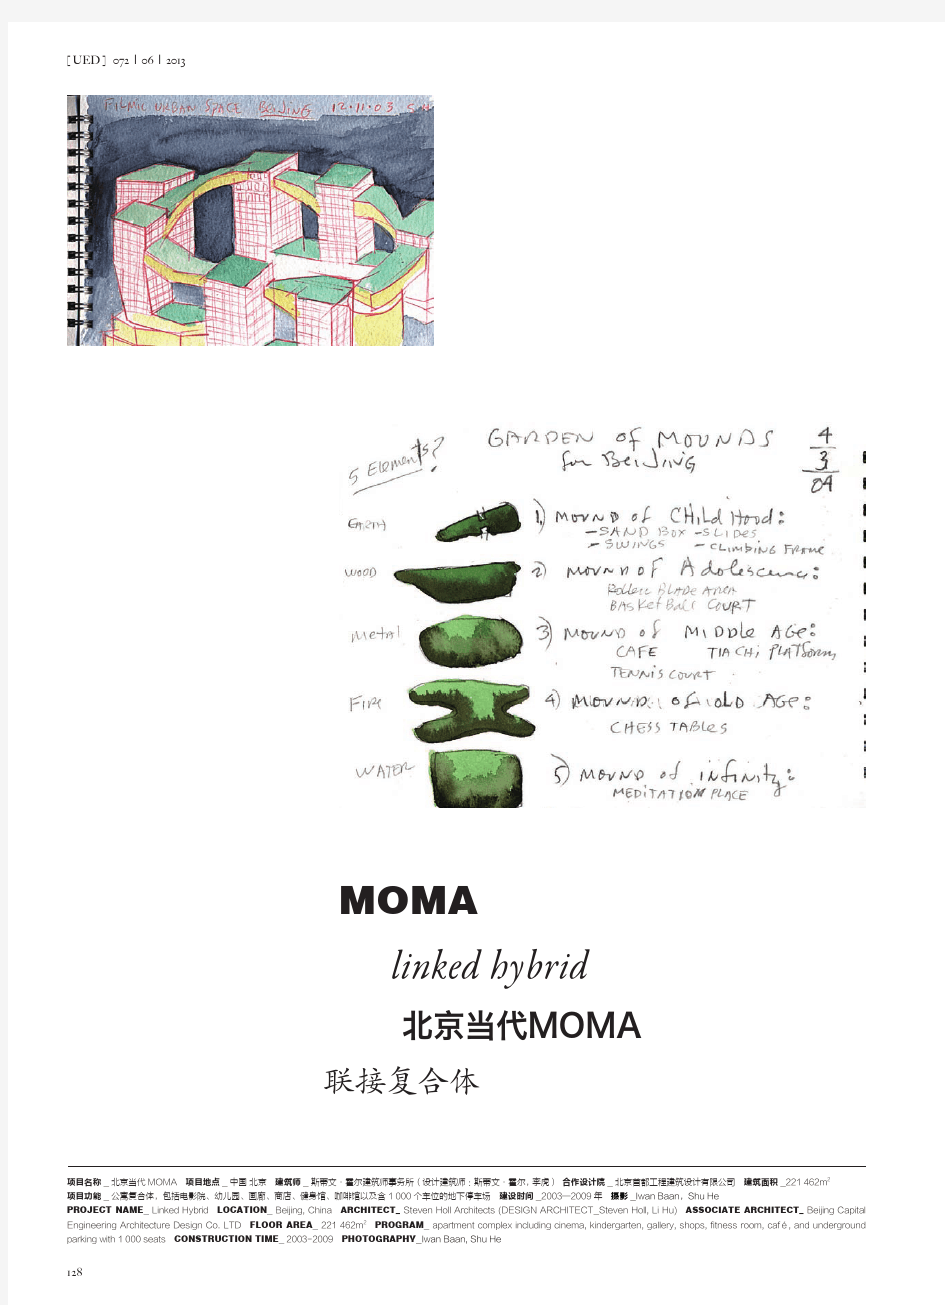 北京当代MOMA联接复合体